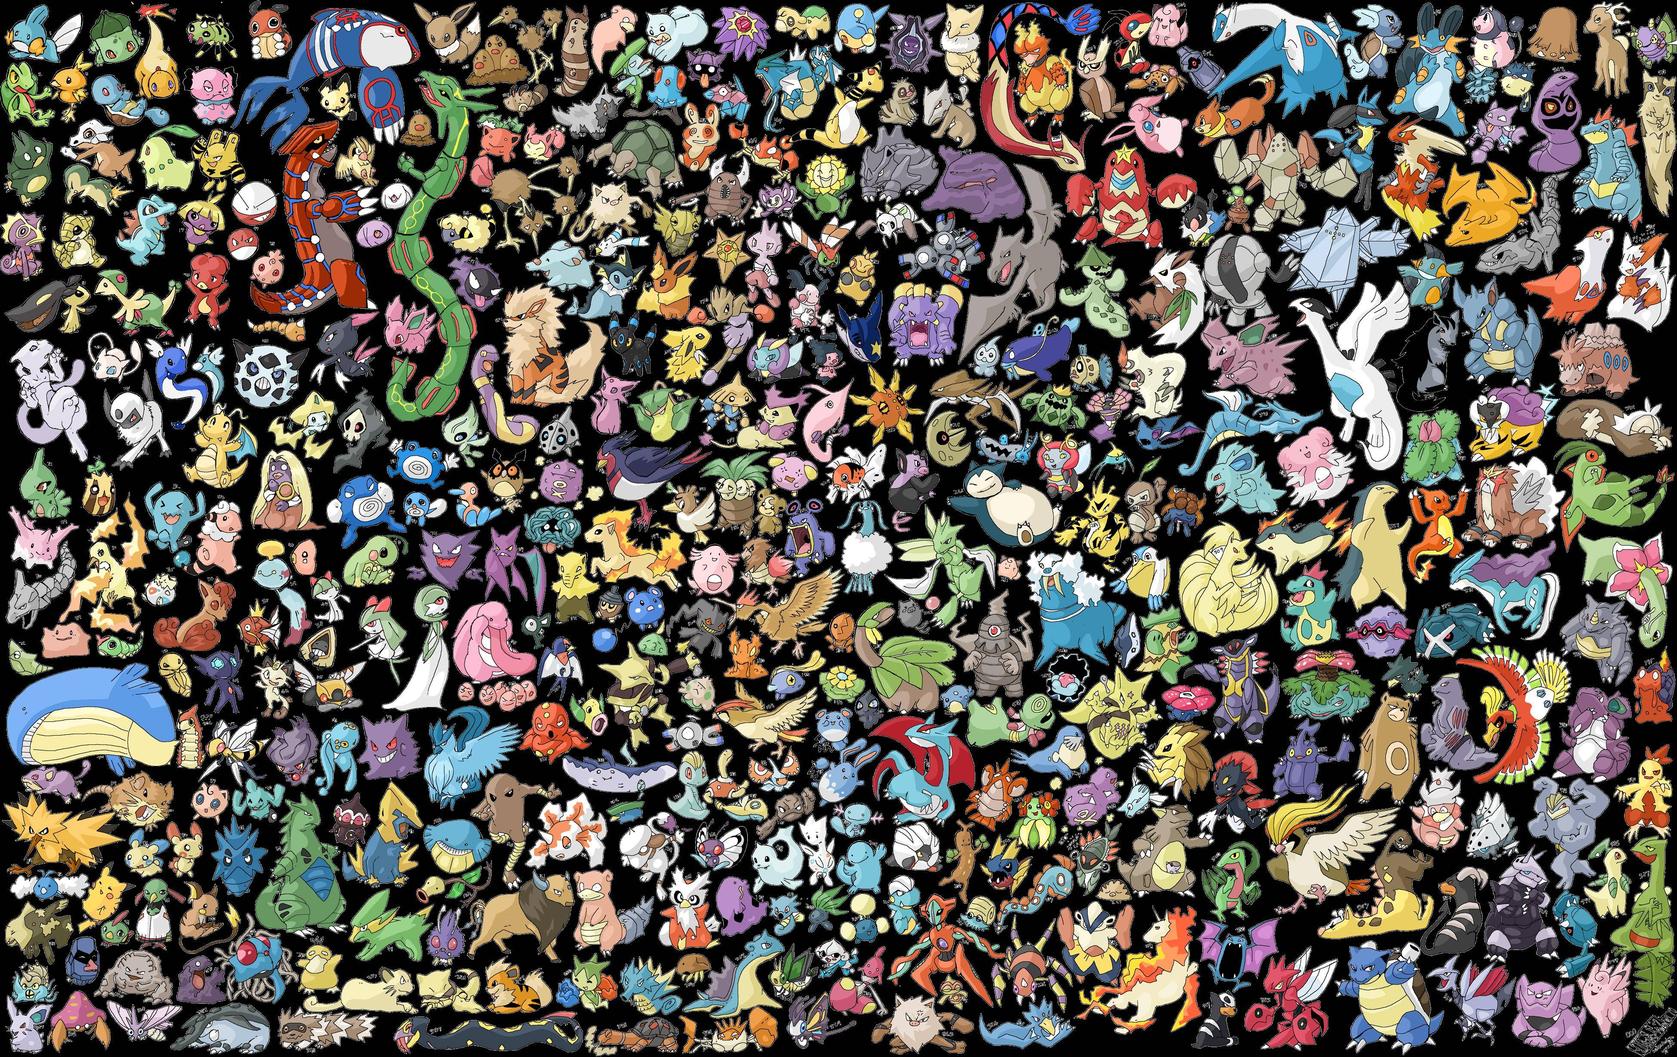 Pokemon Computer Wallpapers, Desktop Backgrounds | 1677x1057 | ID ...